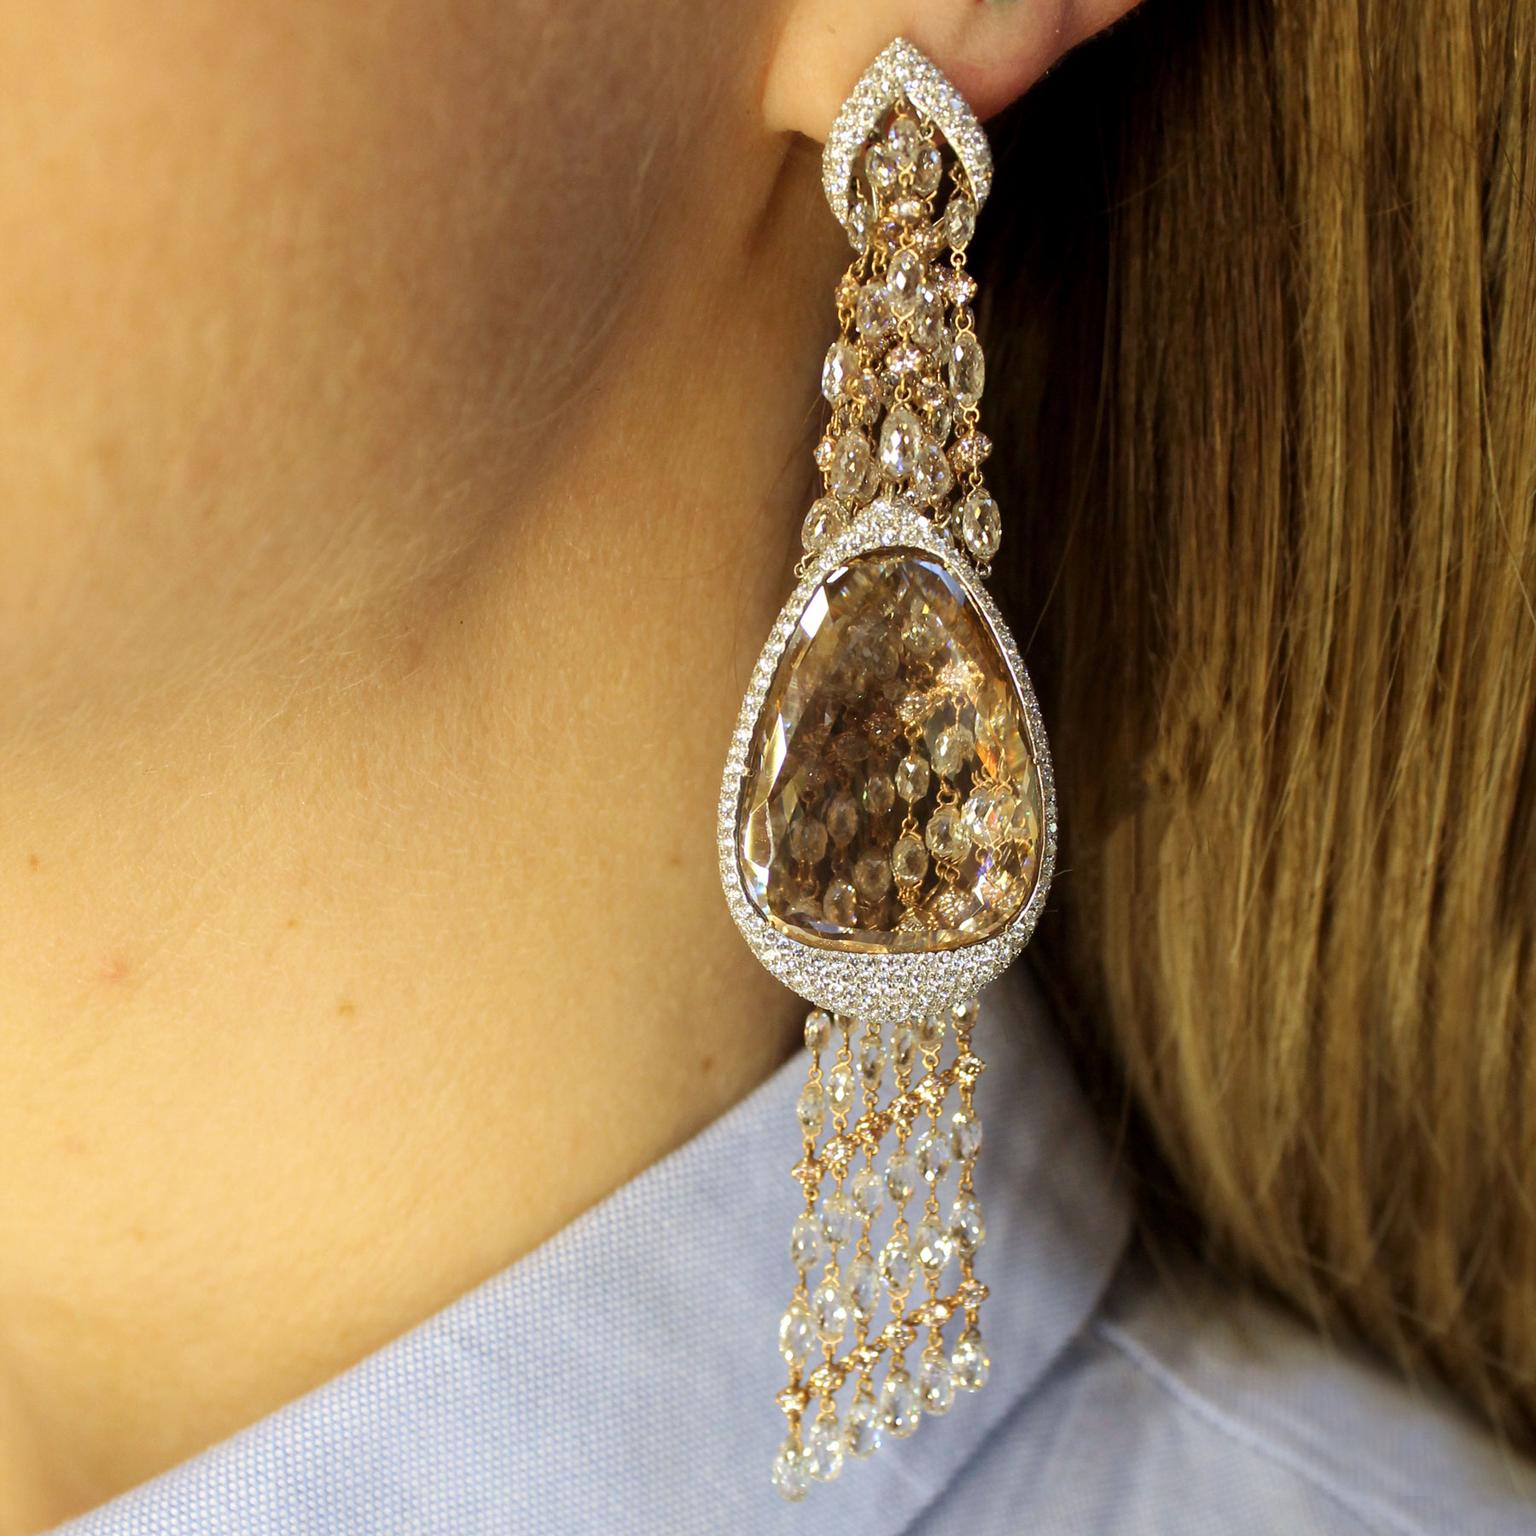 Moussaieff portrait diamond chandelier earrings on model